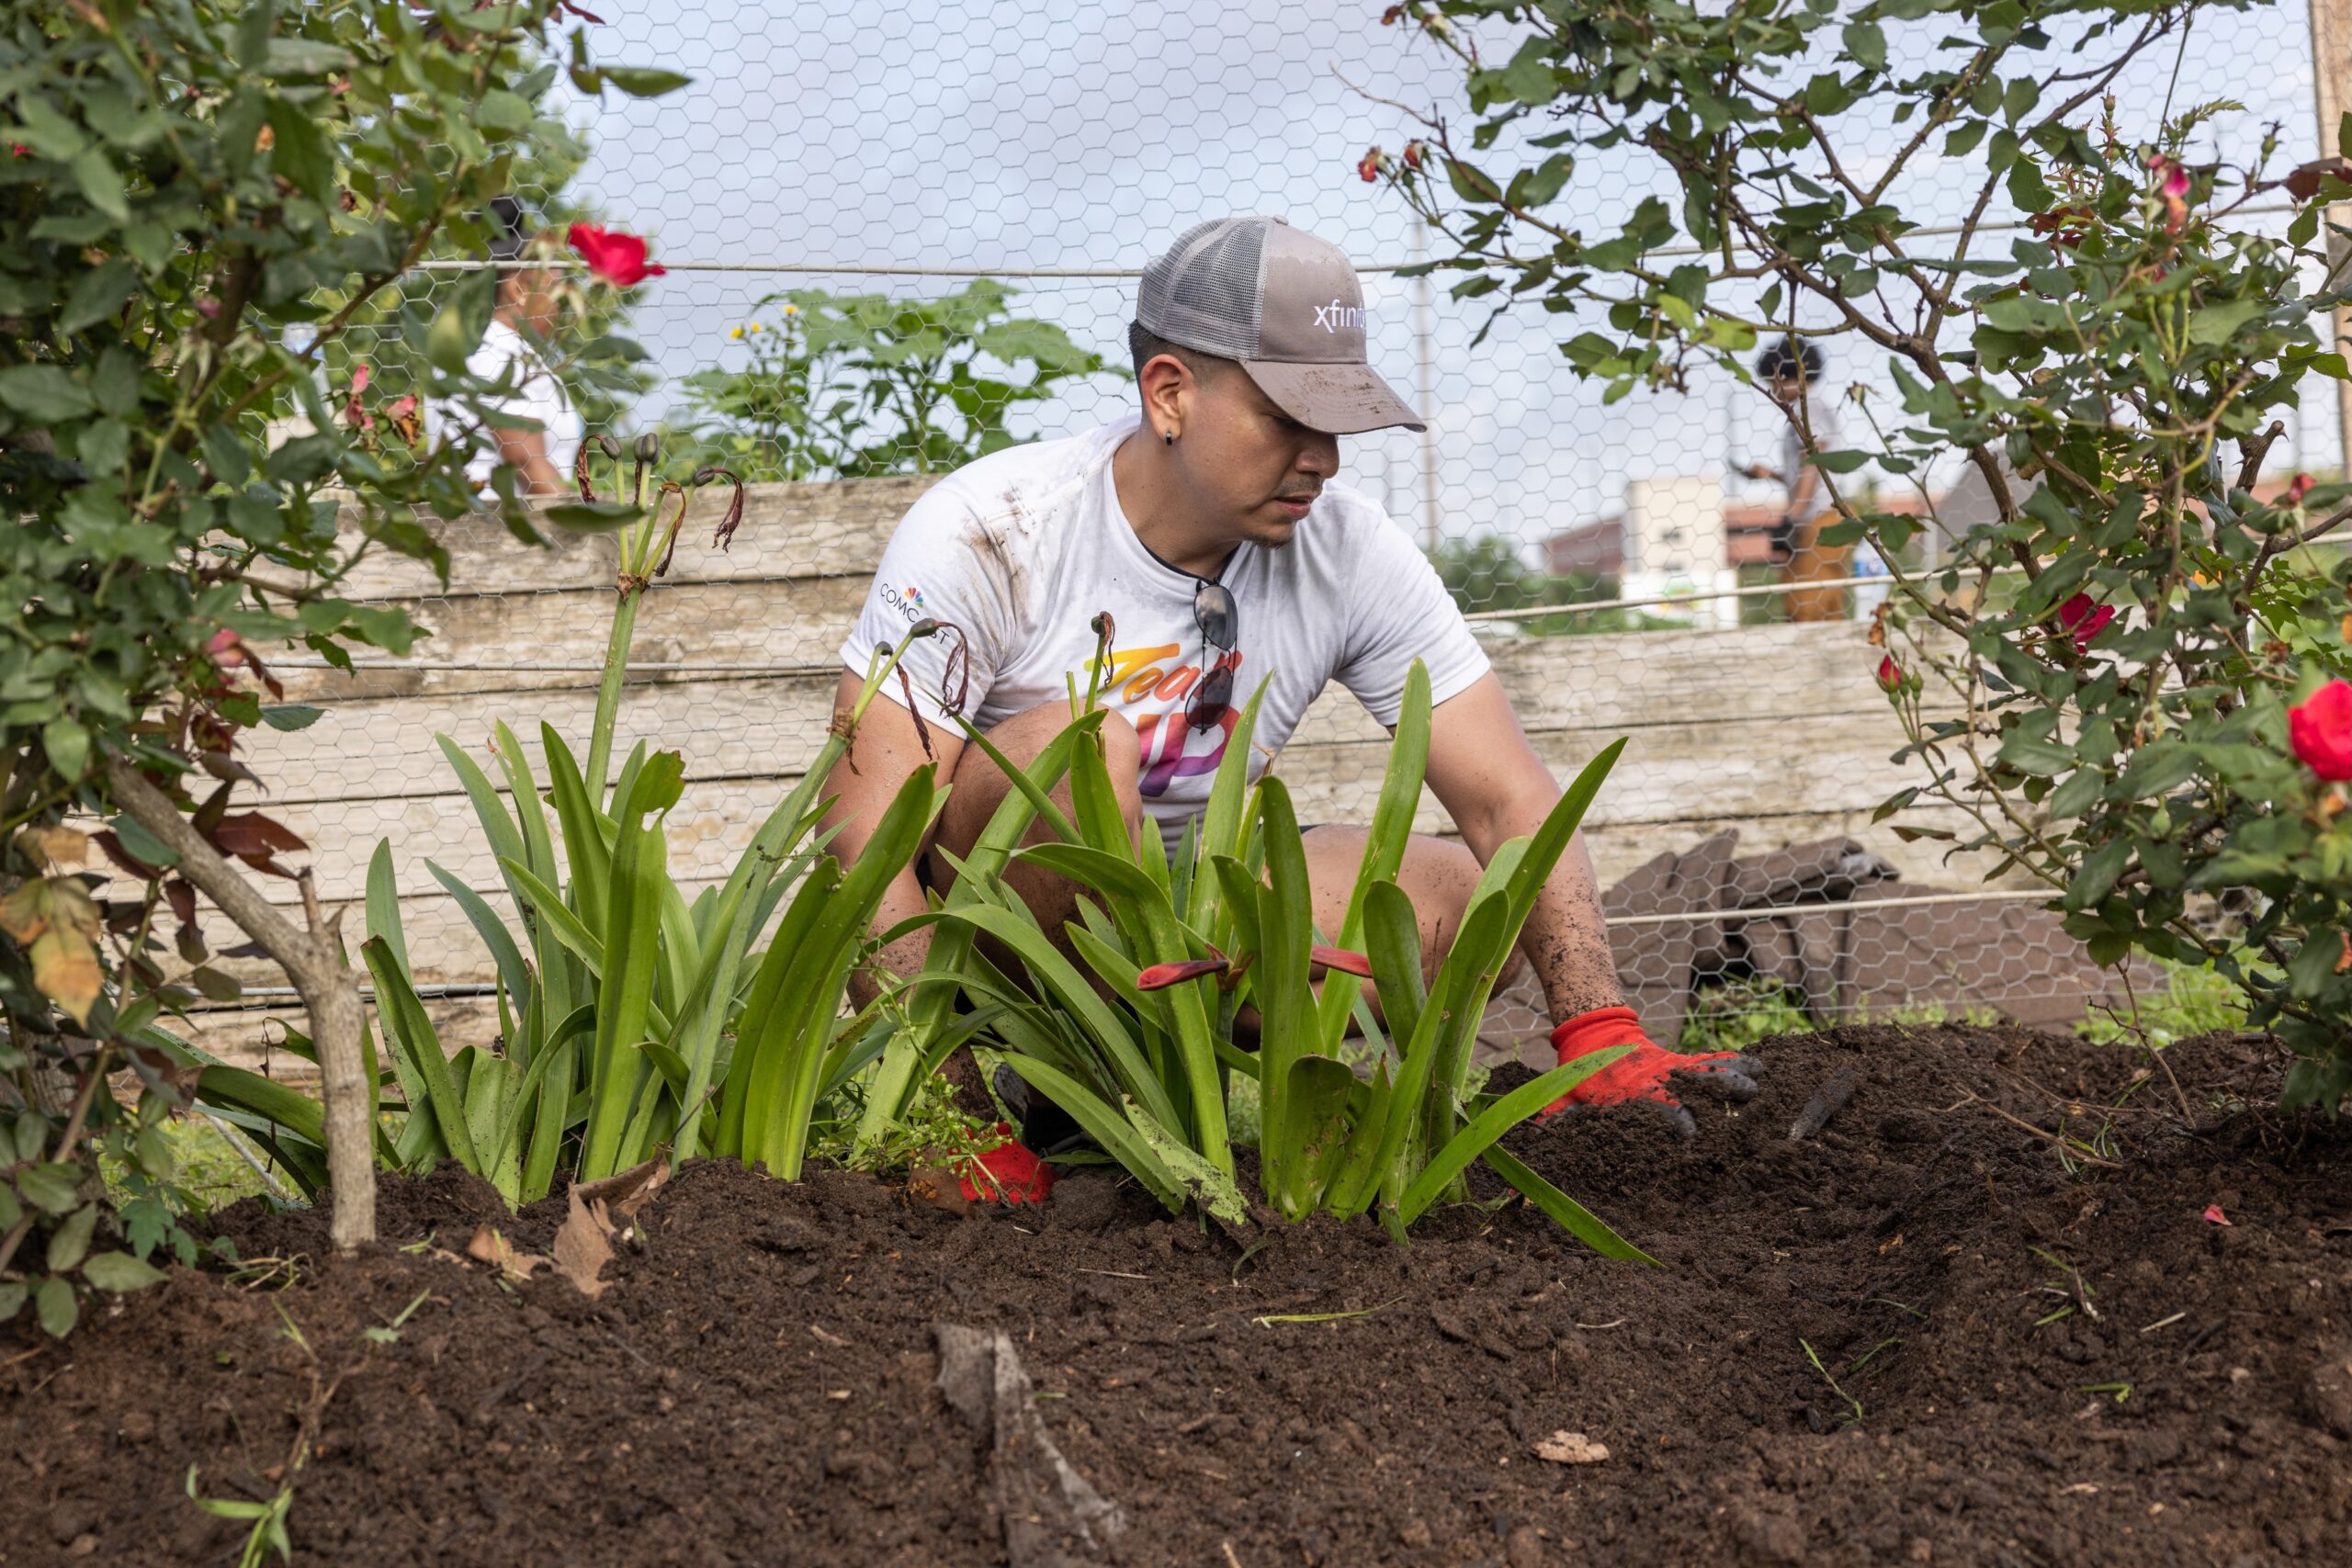 Volunteer wearing baseball cap bent low and working in garden bed